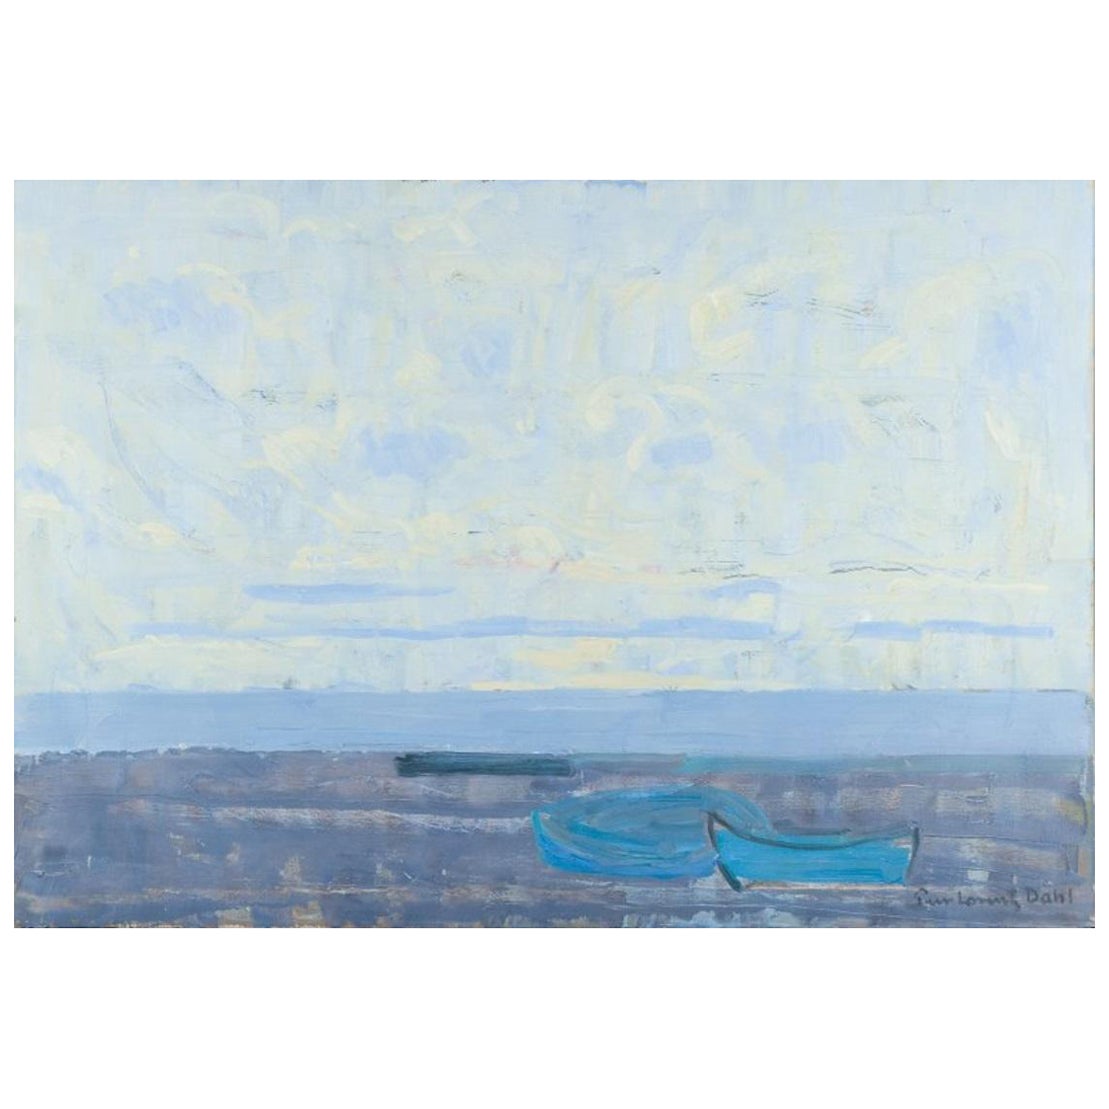 Peer Lorentz Dahl, artiste norvégien Huile sur toile. vue de la plage moderniste